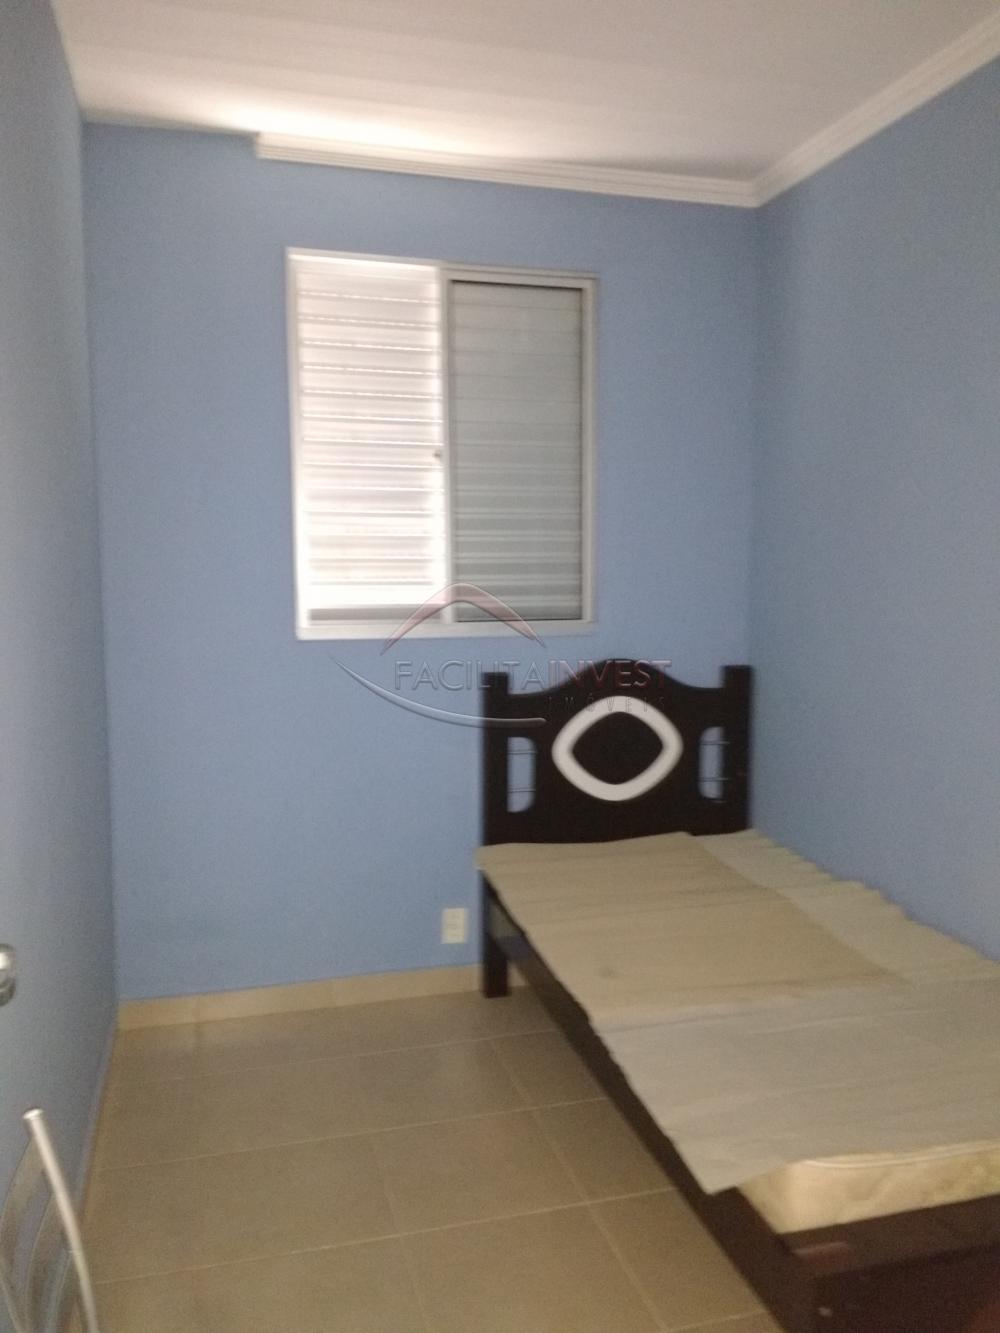 Alugar Apartamentos / Apartamento Mobiliado em Ribeirão Preto R$ 900,00 - Foto 8